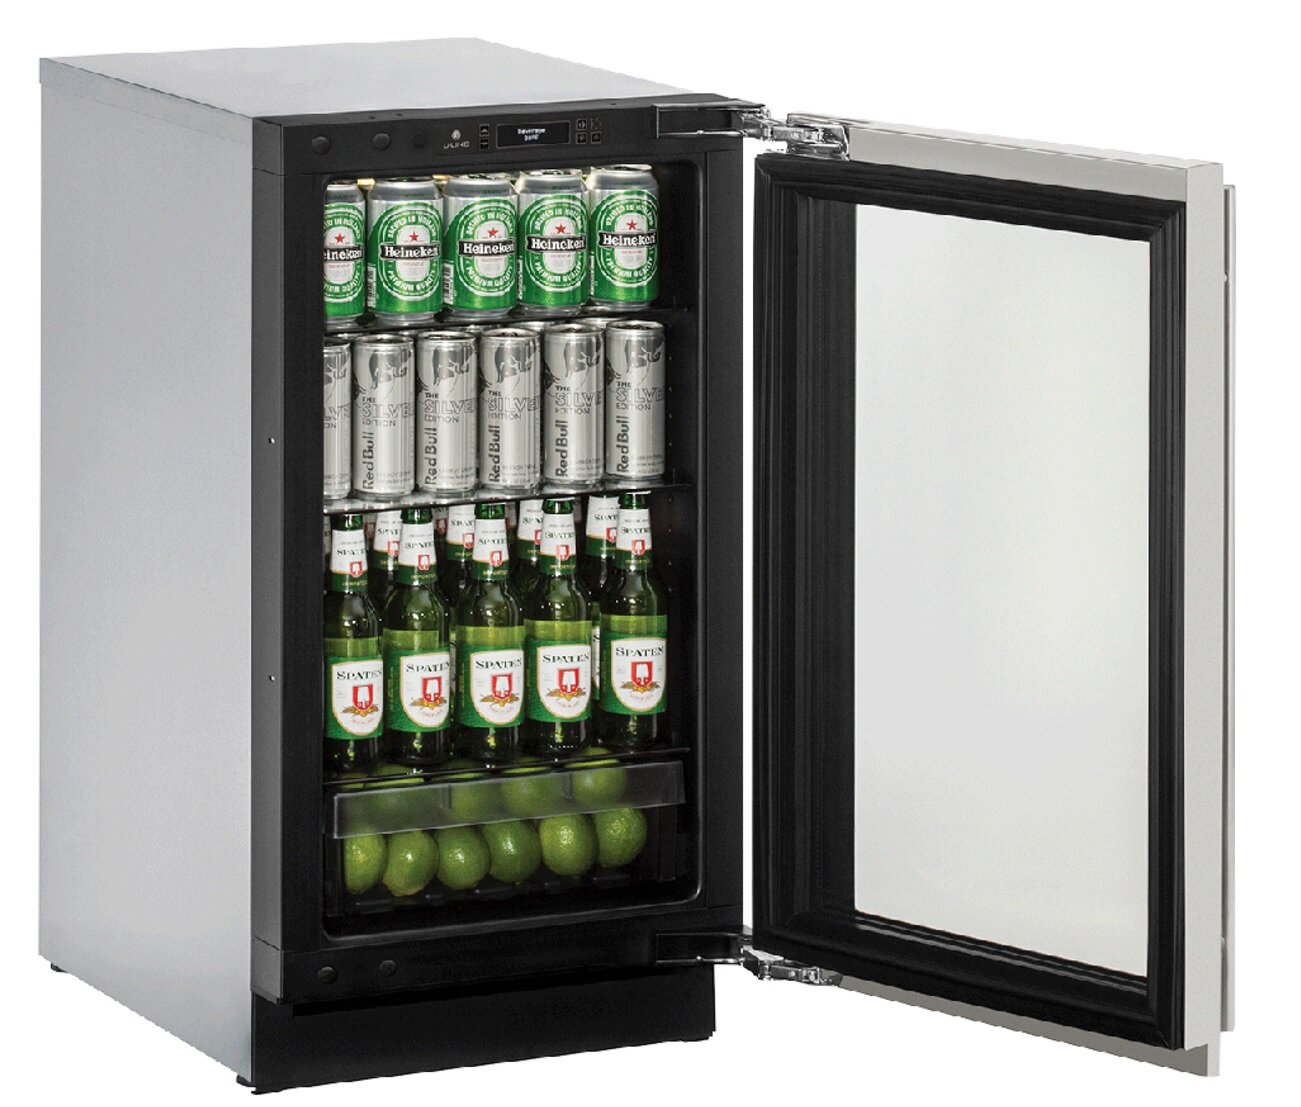 U Line 3000 Series 123 Cans 12 Oz Built In Beverage Refrigerator Wayfair